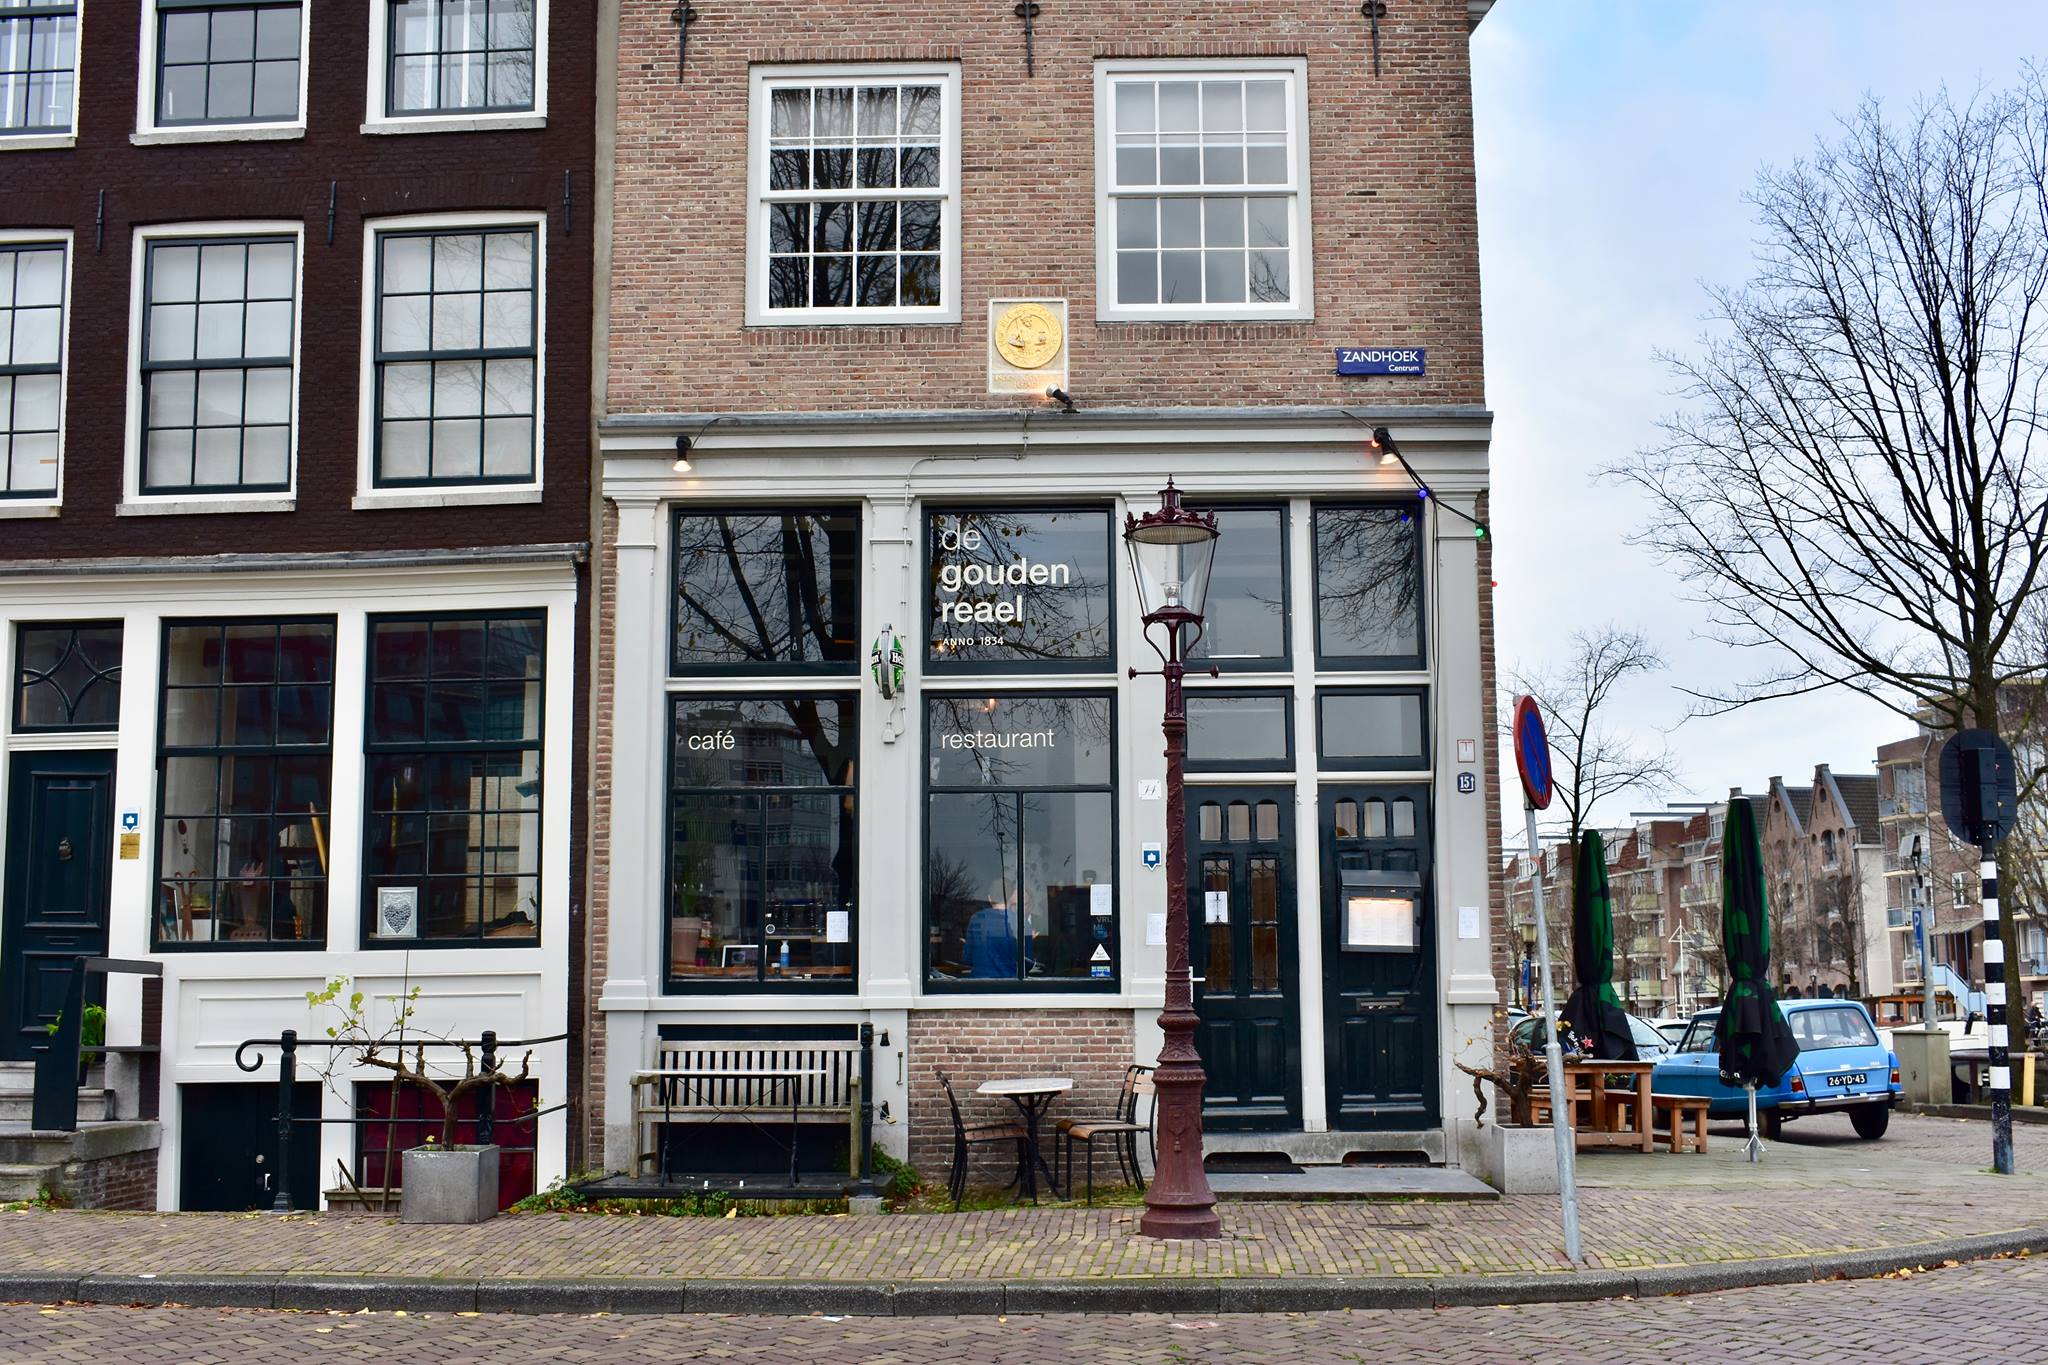 Caron opent nieuw restaurant in Gouden Reael Amsterdam